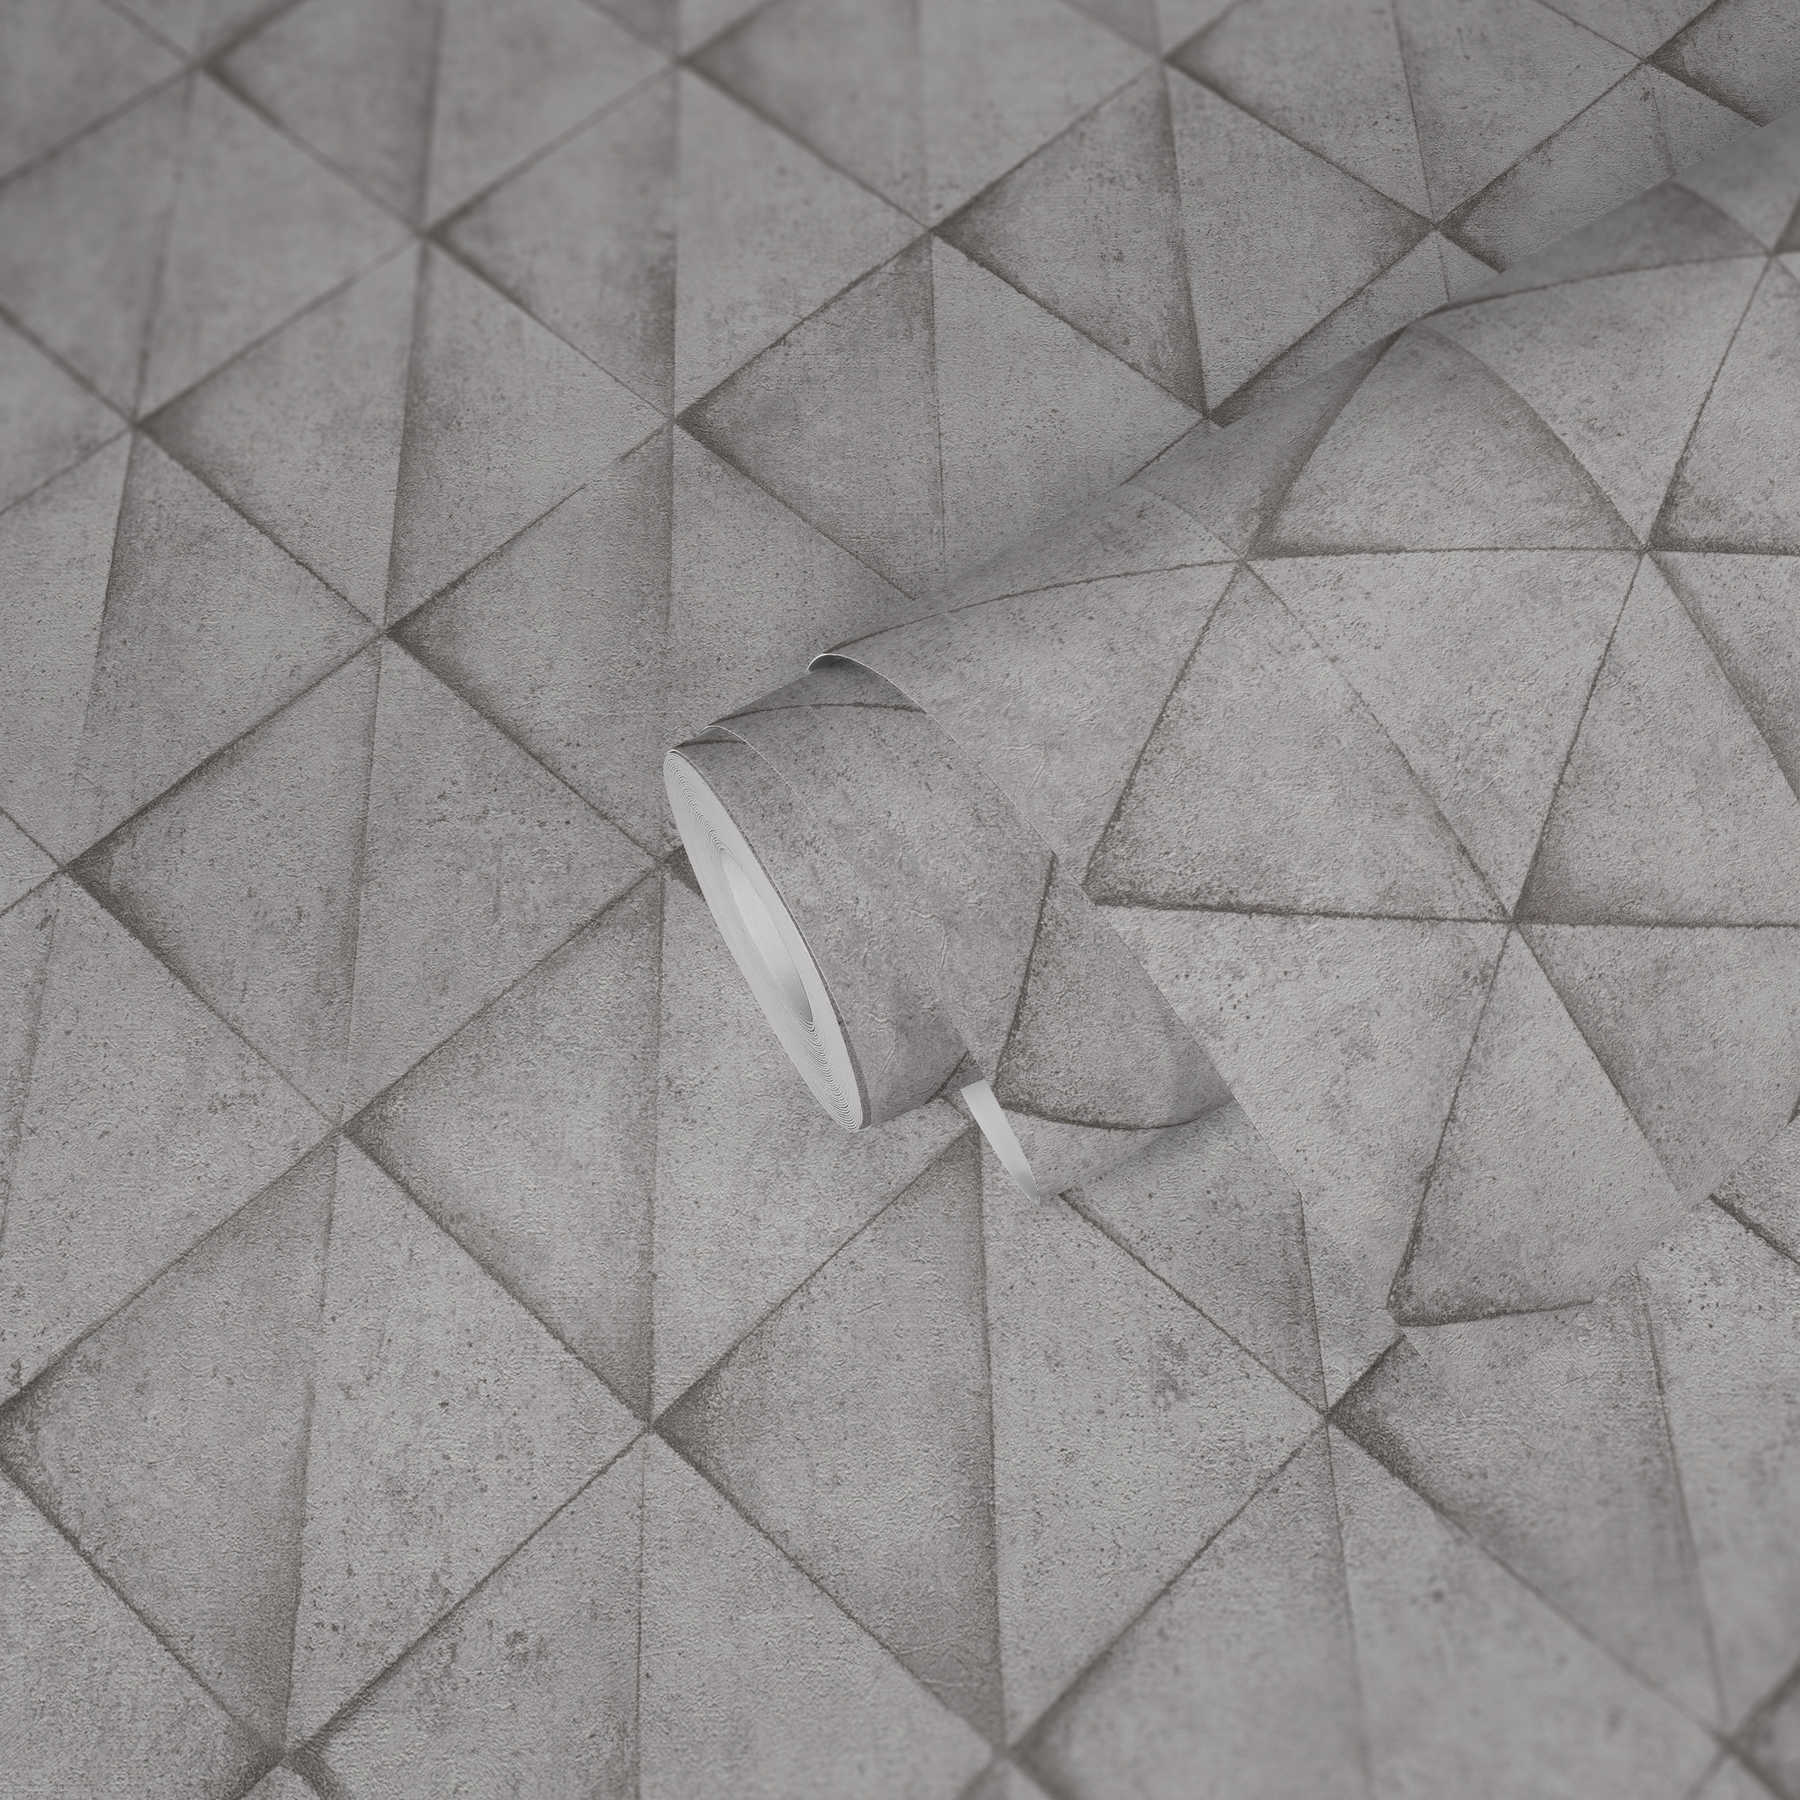             Carta da parati effetto cemento, aspetto usato 3D - grigio, bianco
        